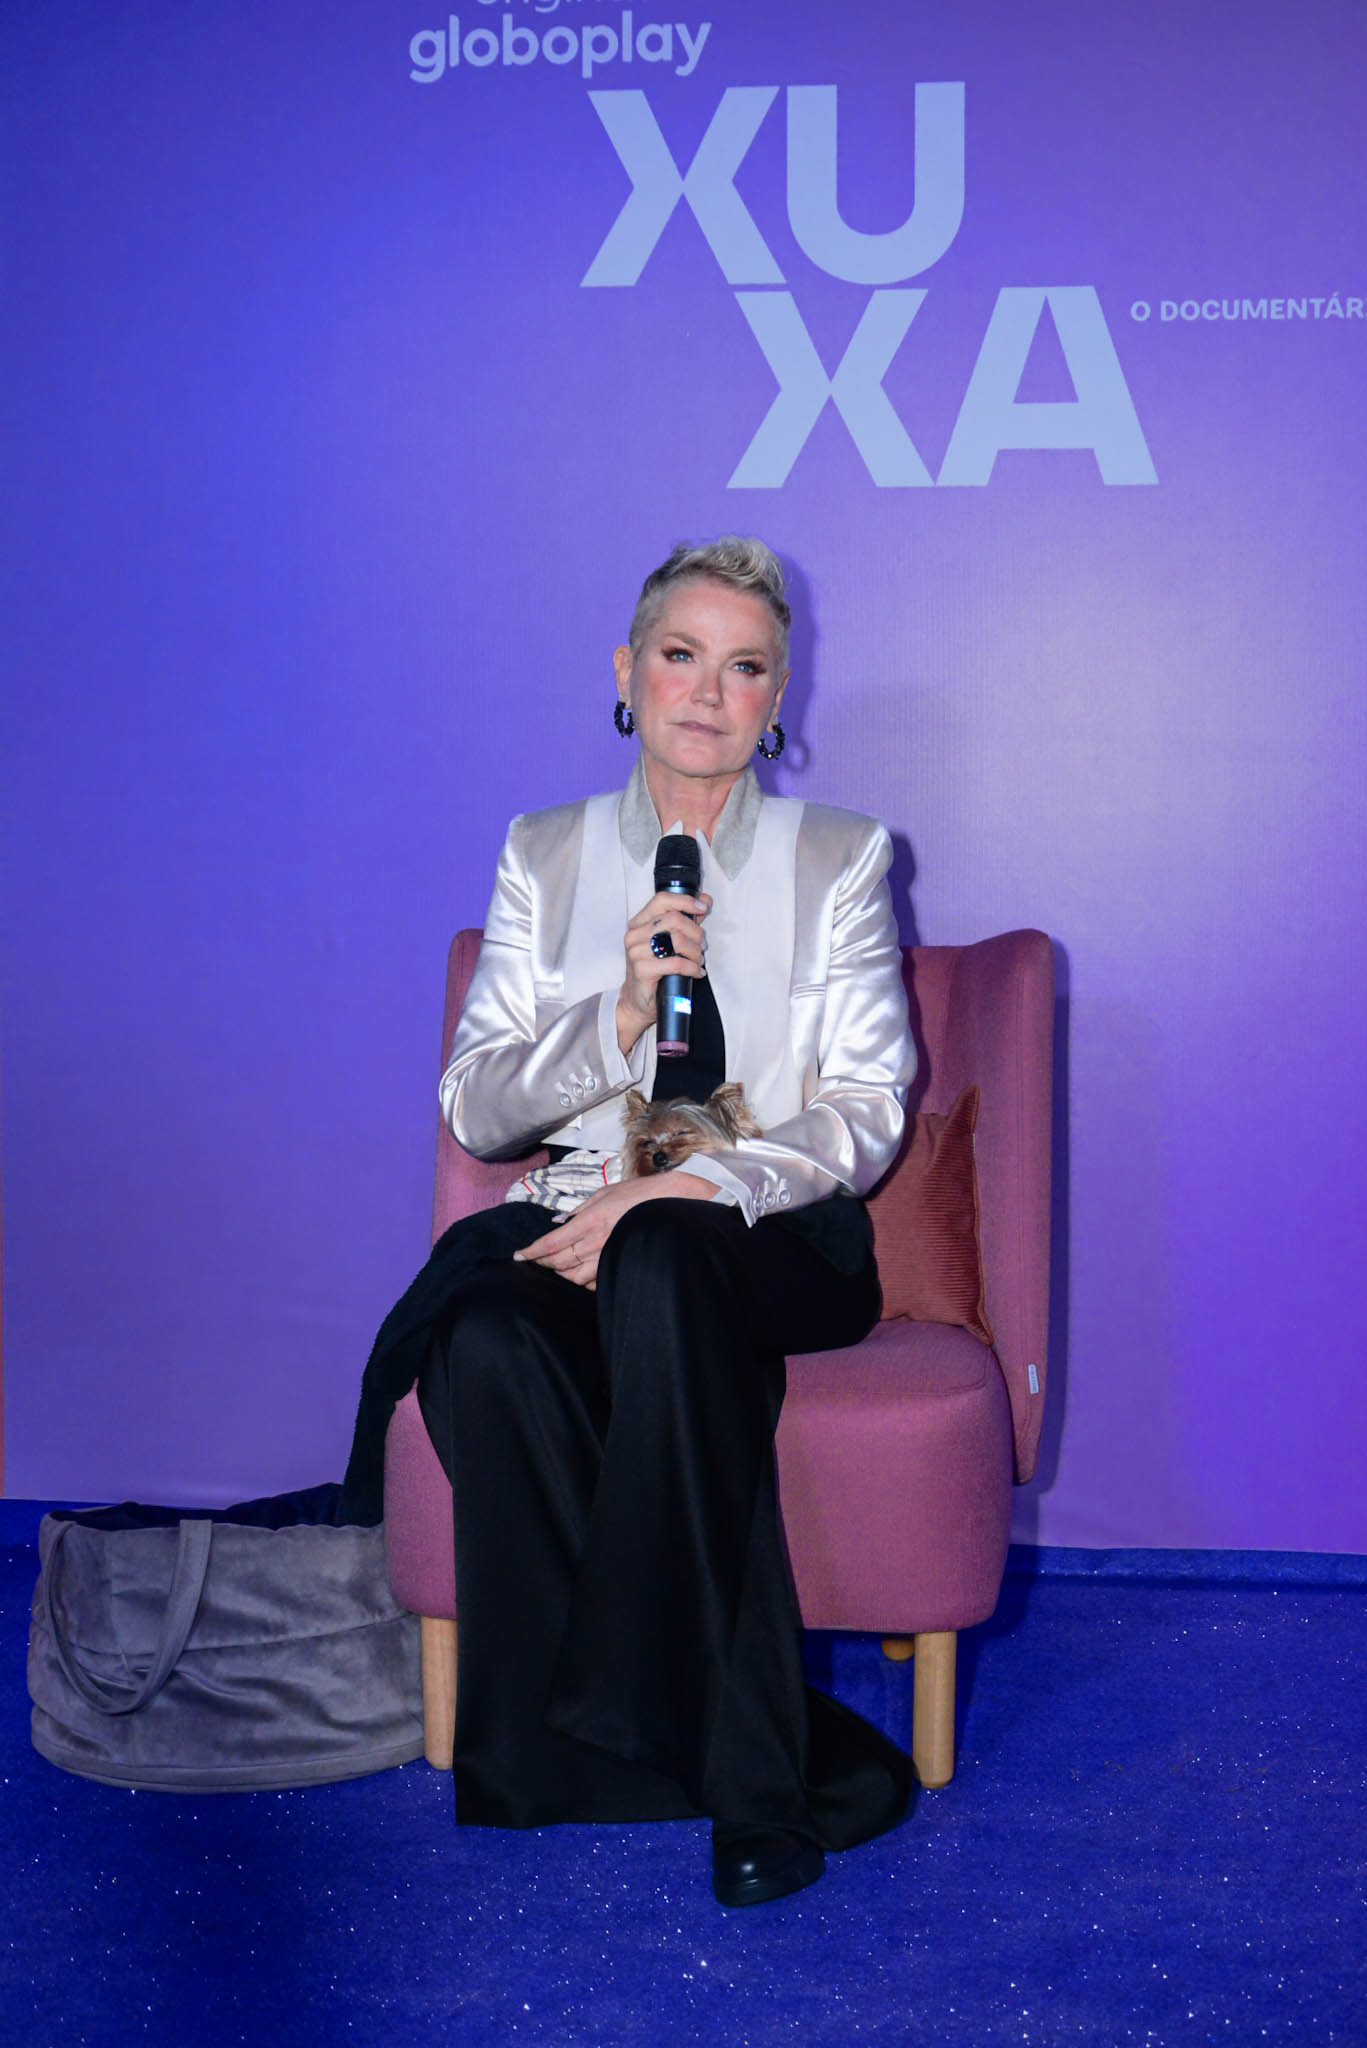 Xuxa lança documentário no Globoplay sobre sua vida ao lado de família